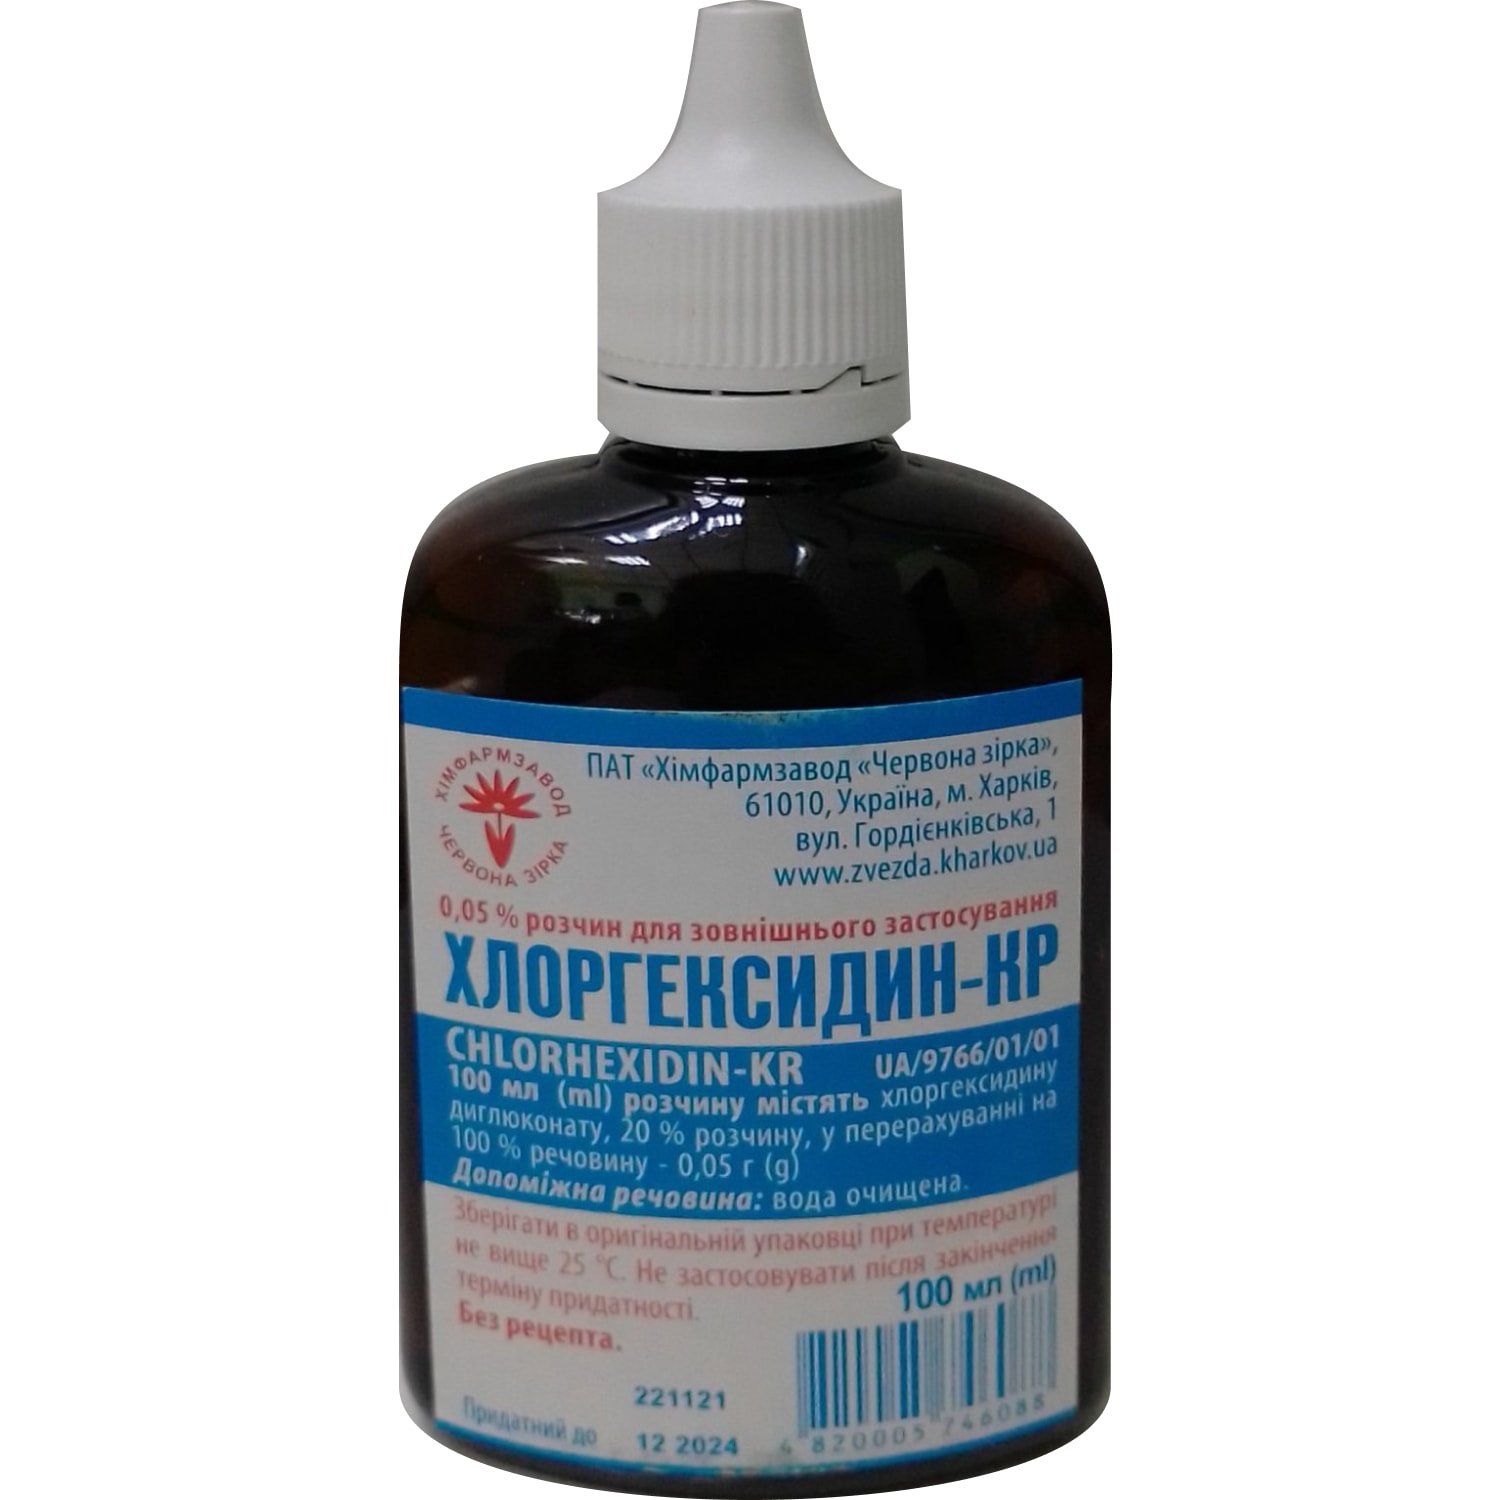 Хлоргексидин-КР біглюконат розчин по 0,05%, 100 мл: інструкція, ціна .